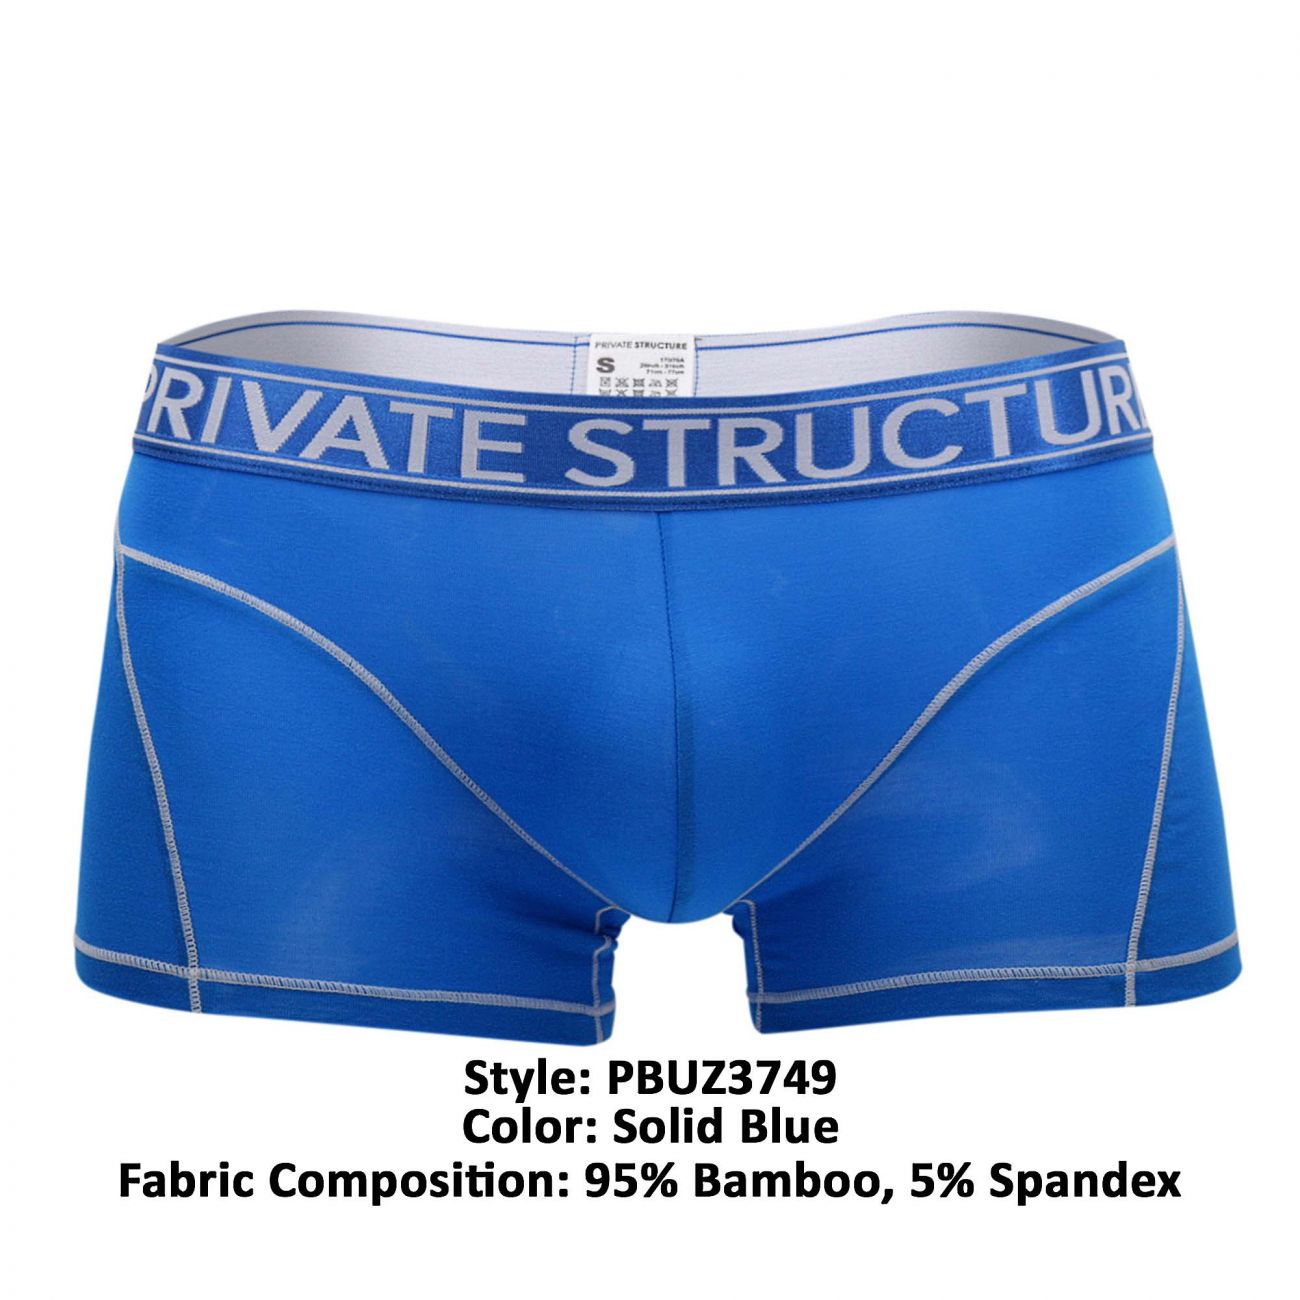 Private-Structure Briefs Underwear for Men | eBay